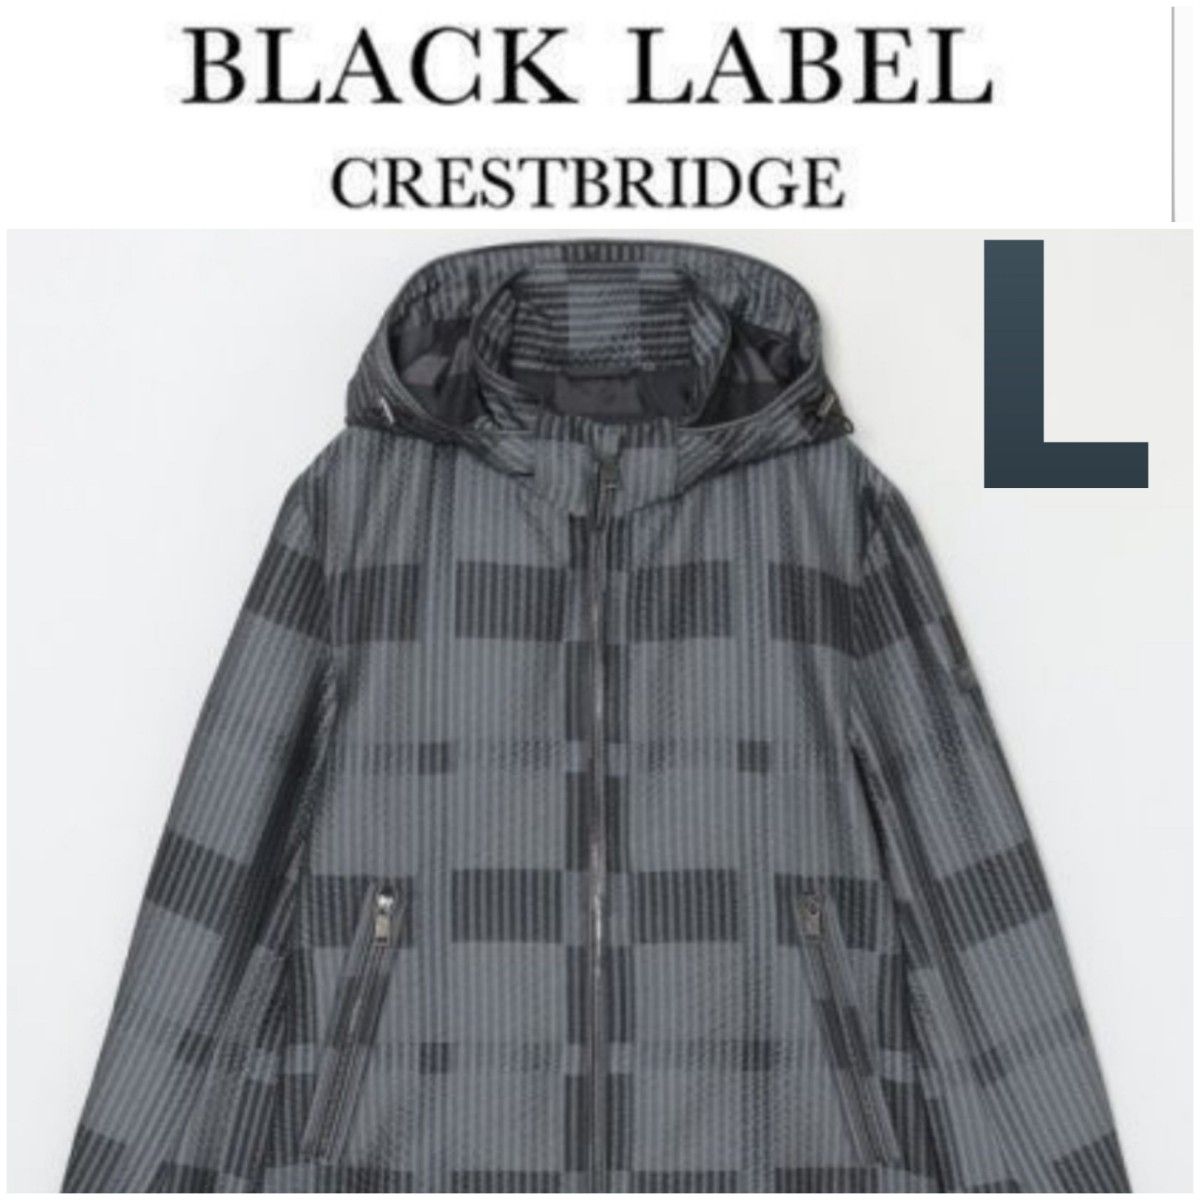 新品、未使用、限定ブルー:サッカーシャドークレストブリッジチェックパーカー Black Label Crest Bridge